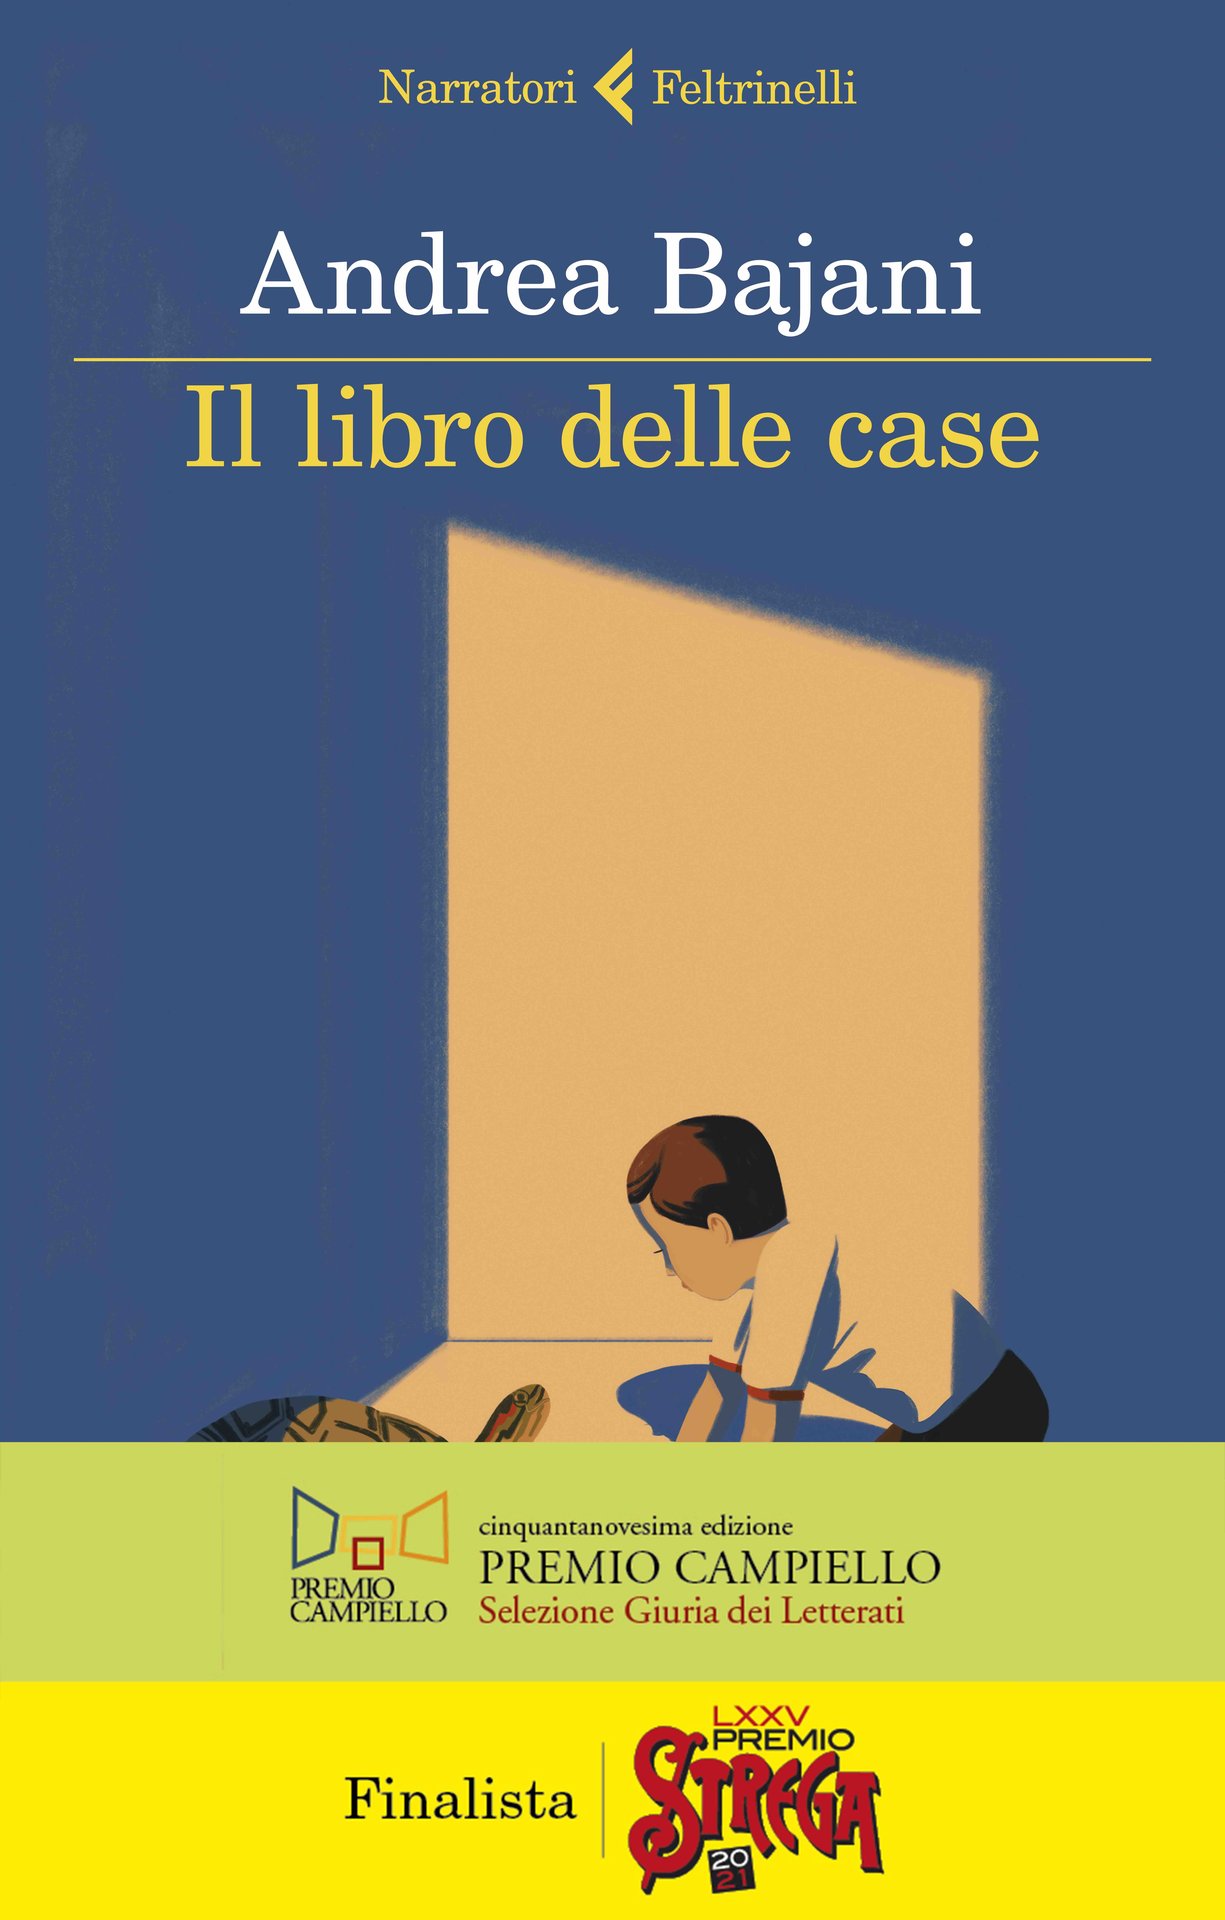 Il libro delle case di Andrea Bajani, finalista al Premio Strega 2021